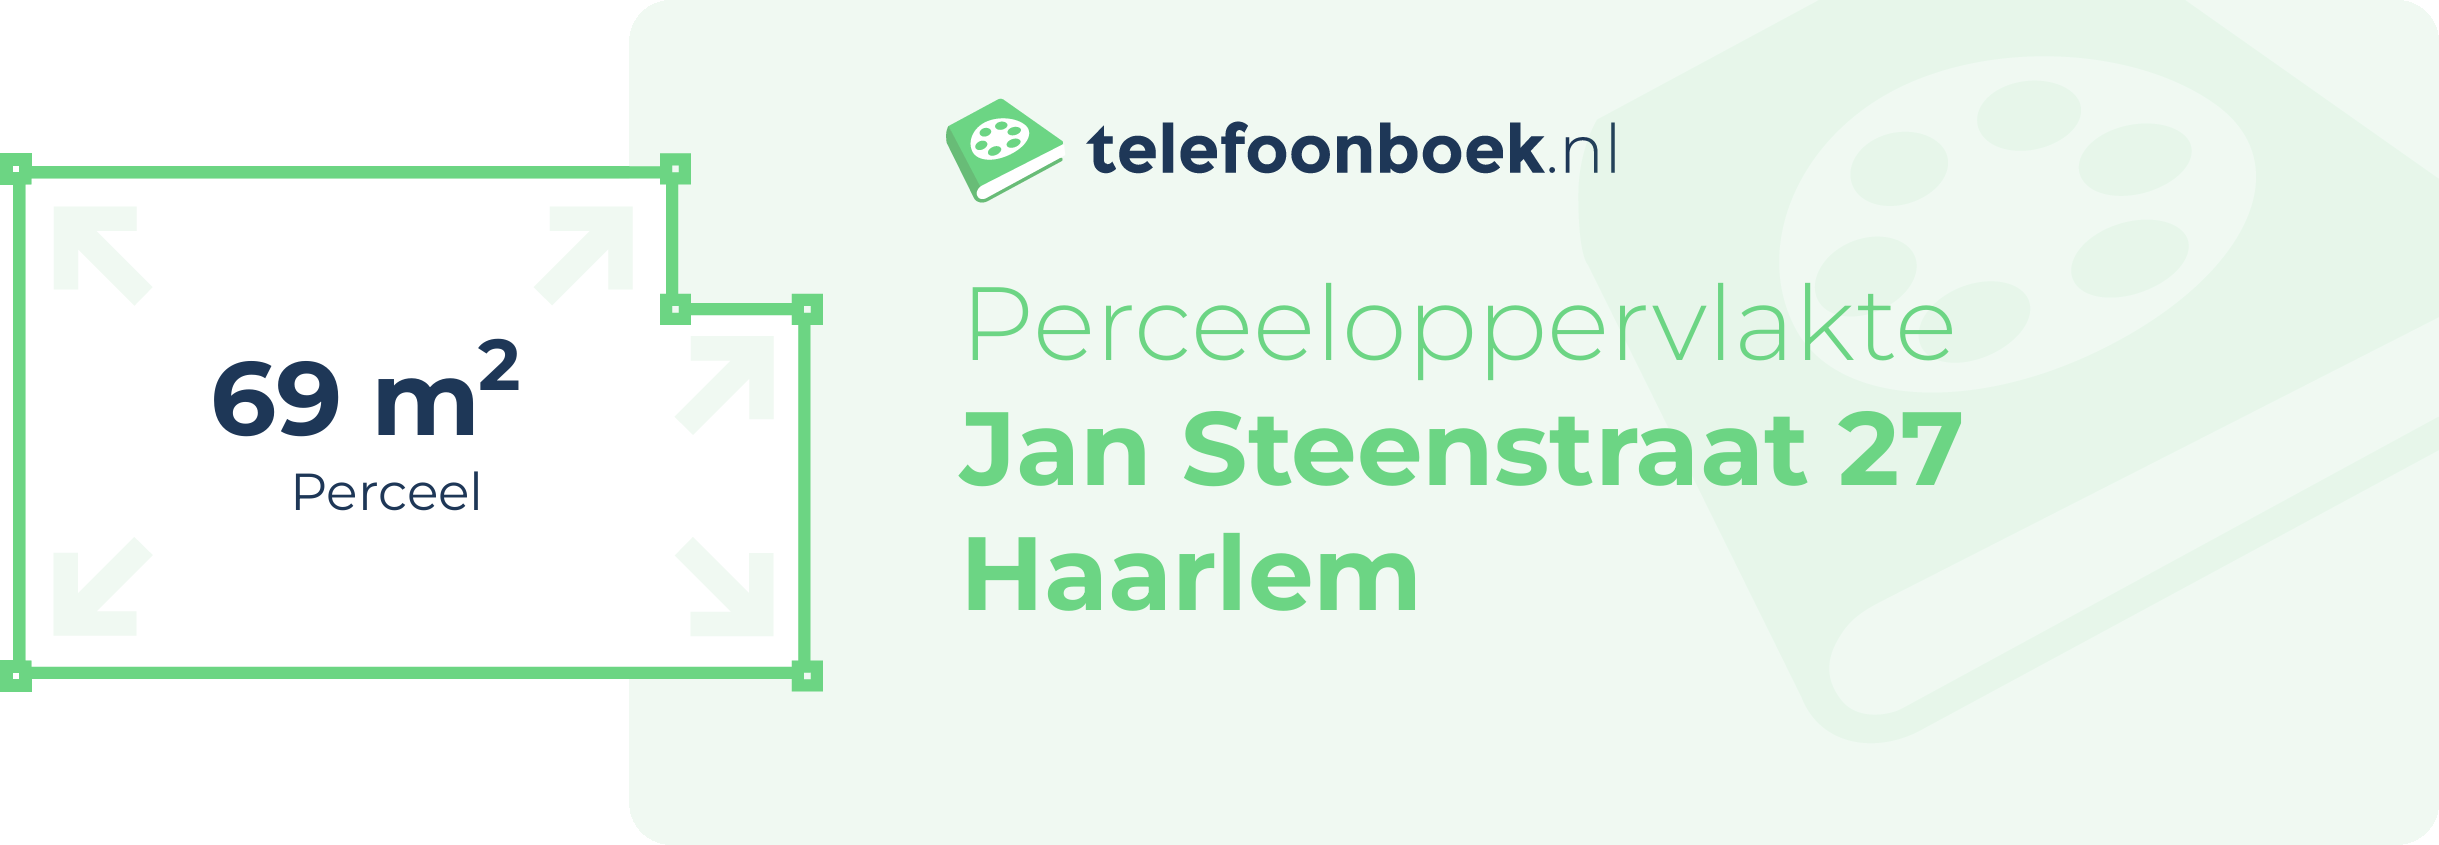 Perceeloppervlakte Jan Steenstraat 27 Haarlem